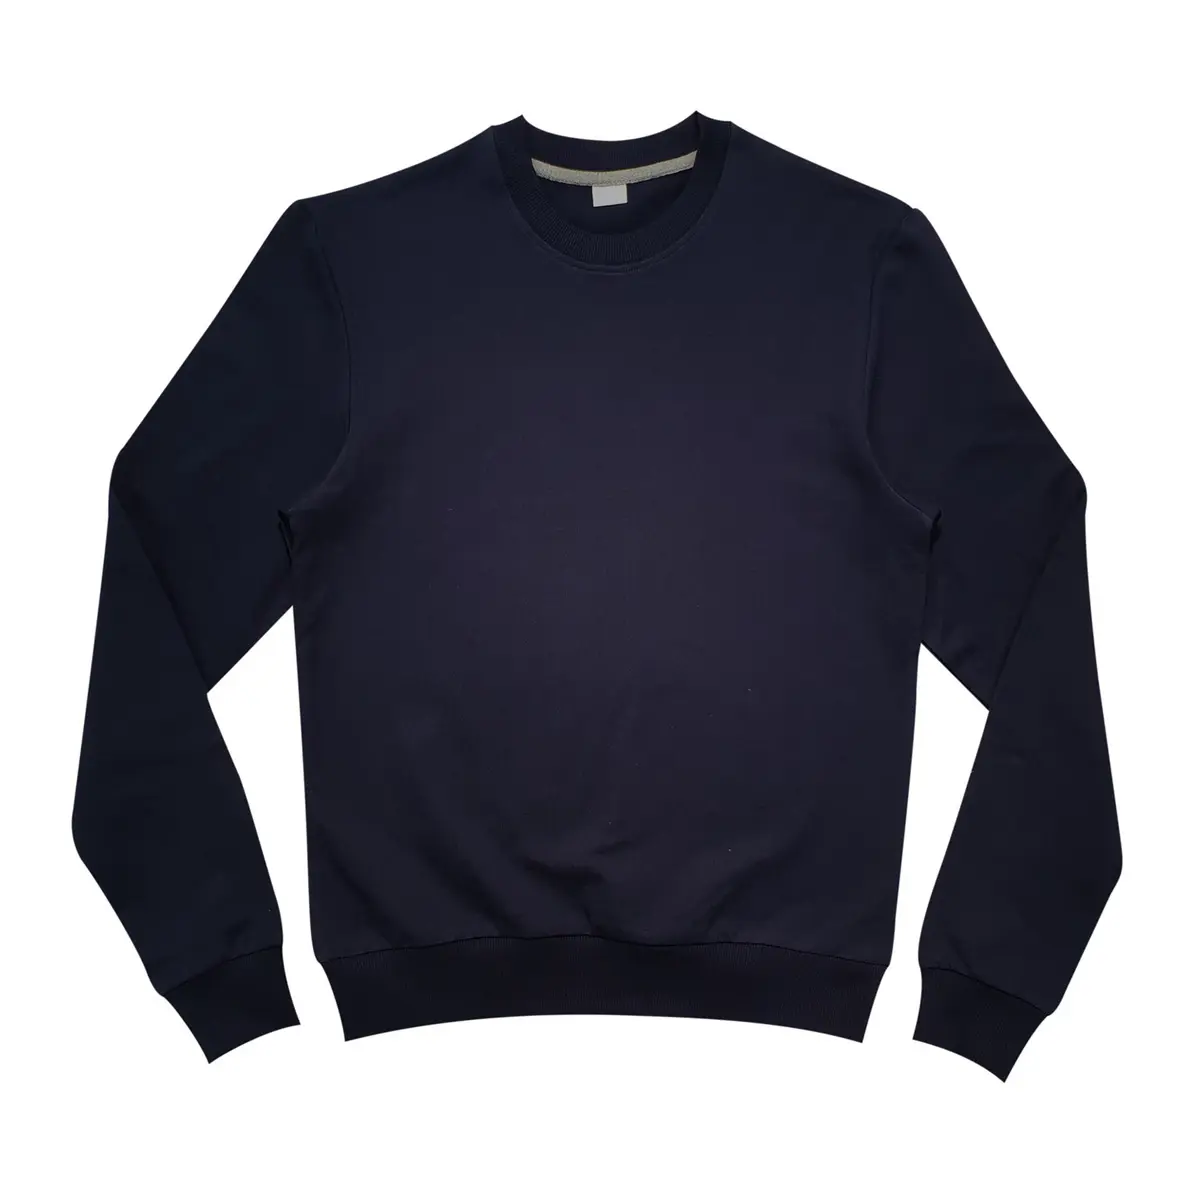 Fashionable Sweatshirt for men Regular sleeves O-neck collar best prices Cotton Dark Blue